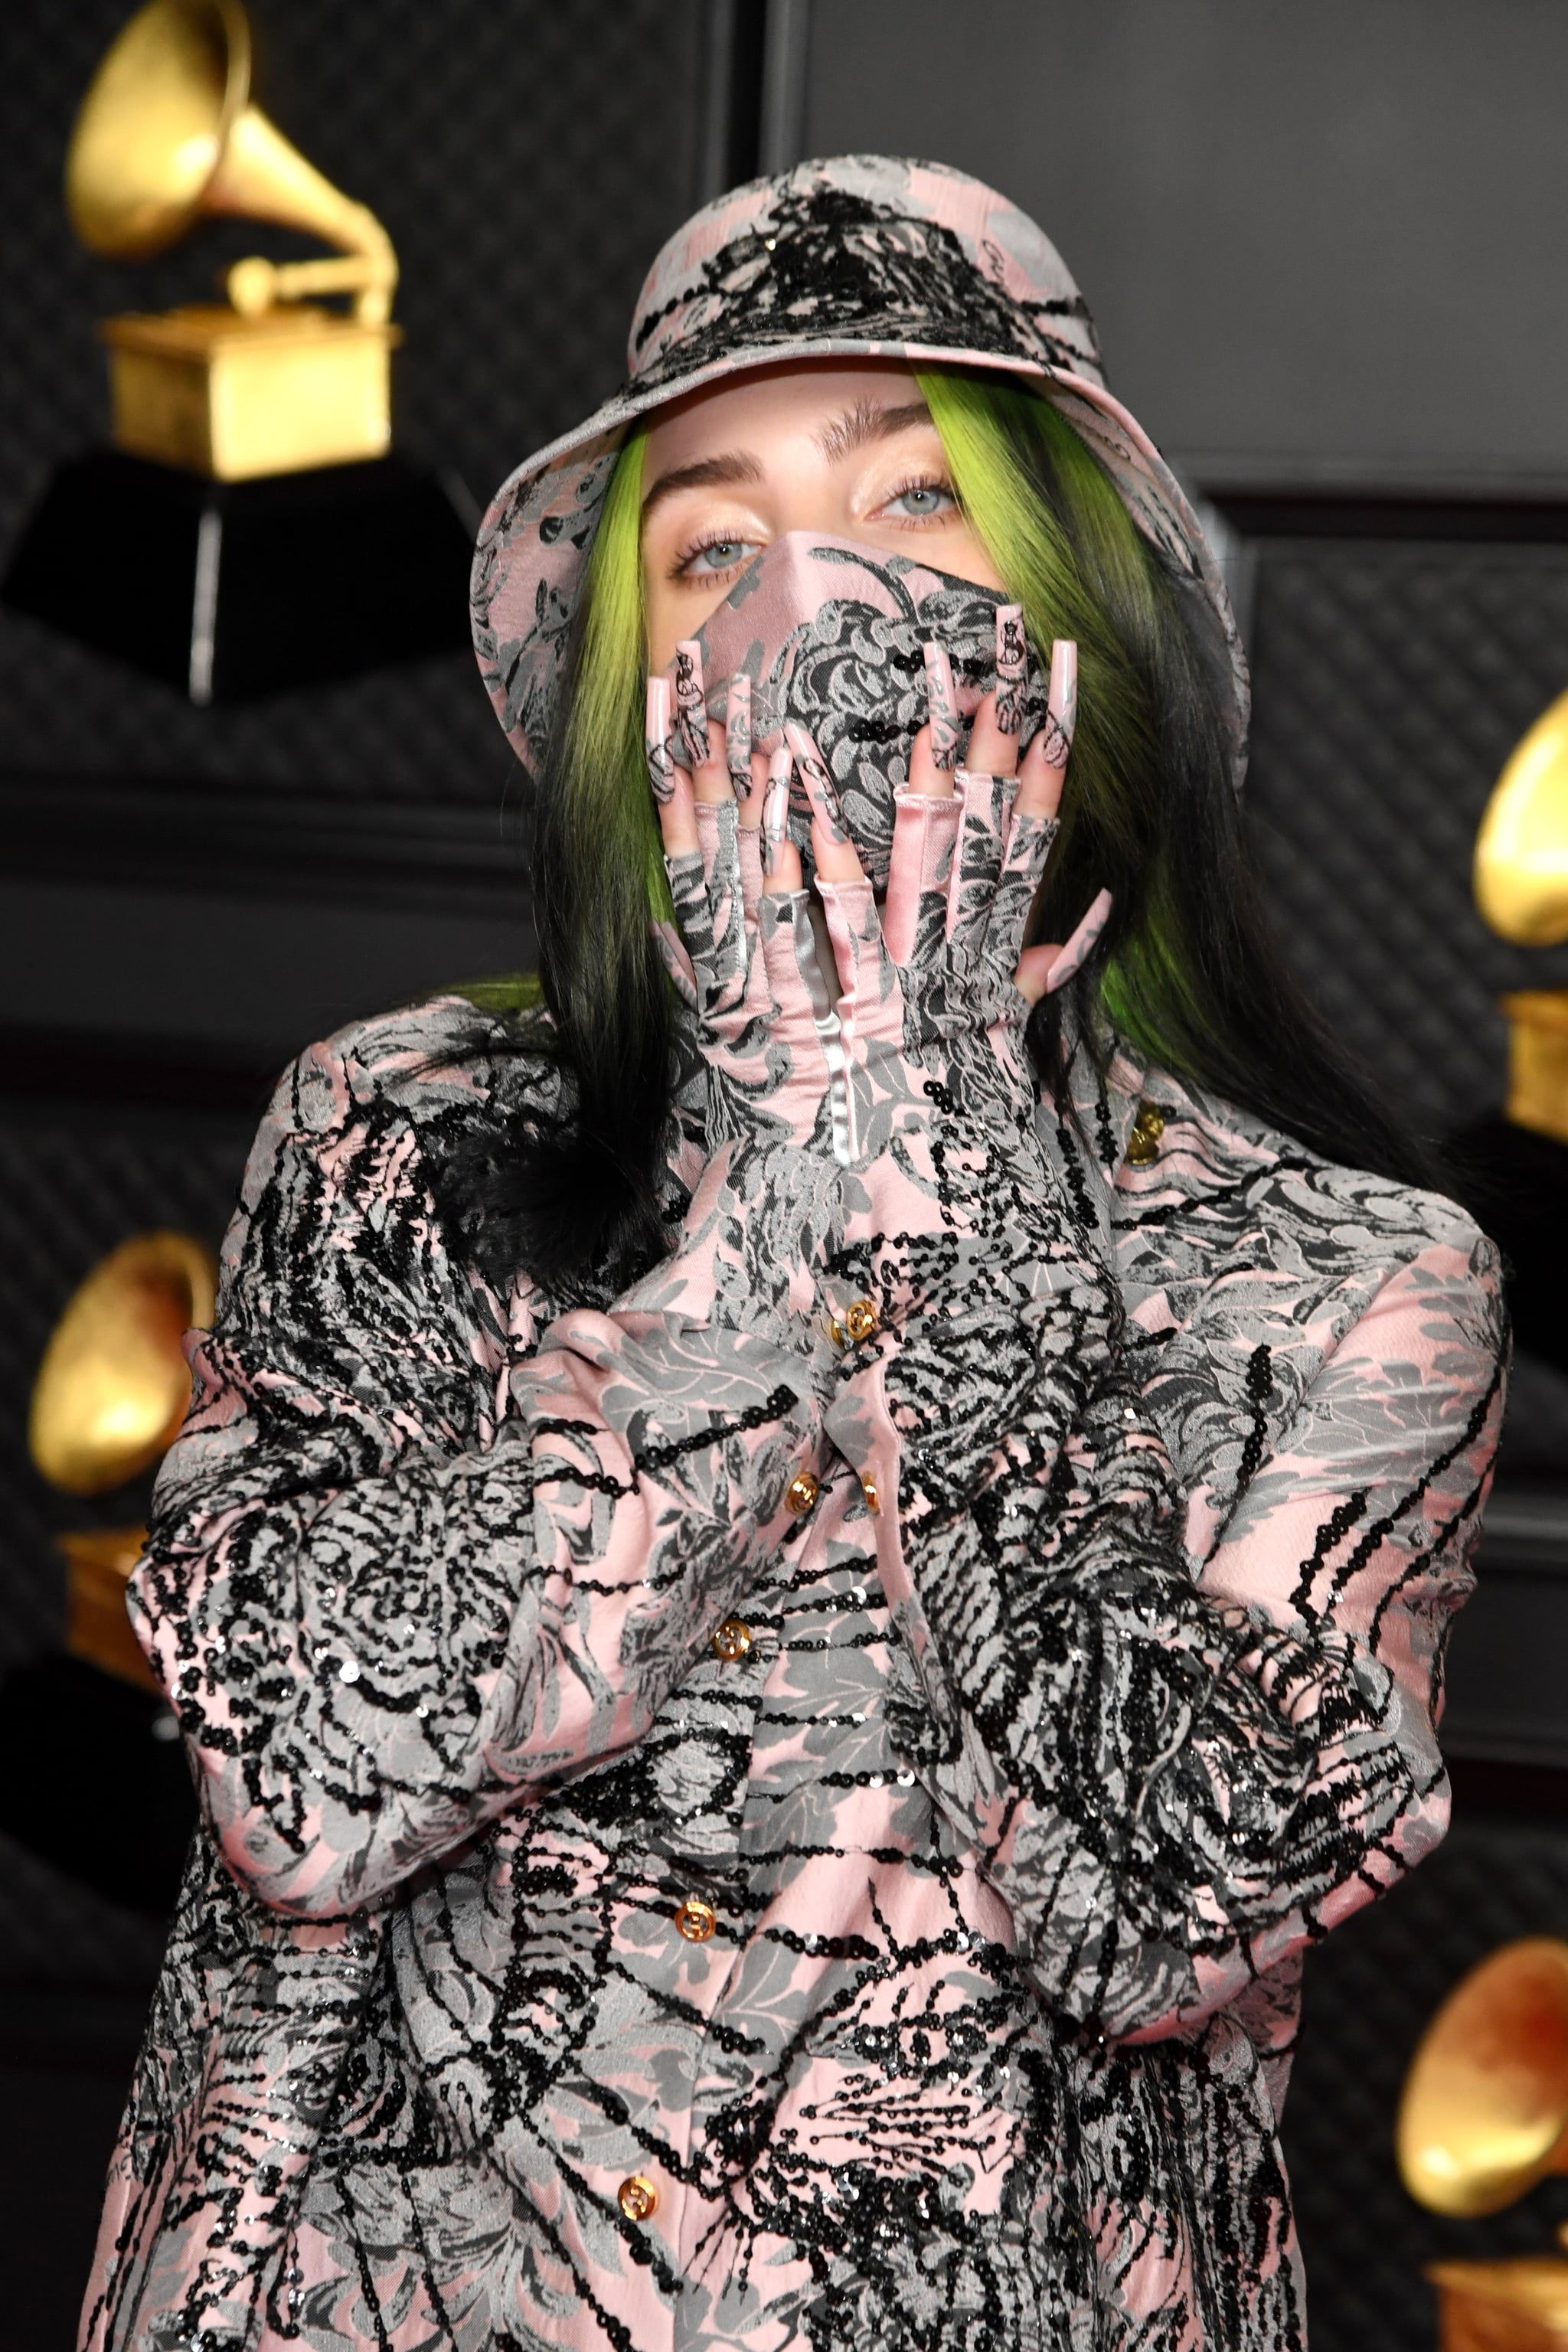 Billie Eilish in Custom Gucci at the 2021 Grammy Awards | POPSUGAR Fashion